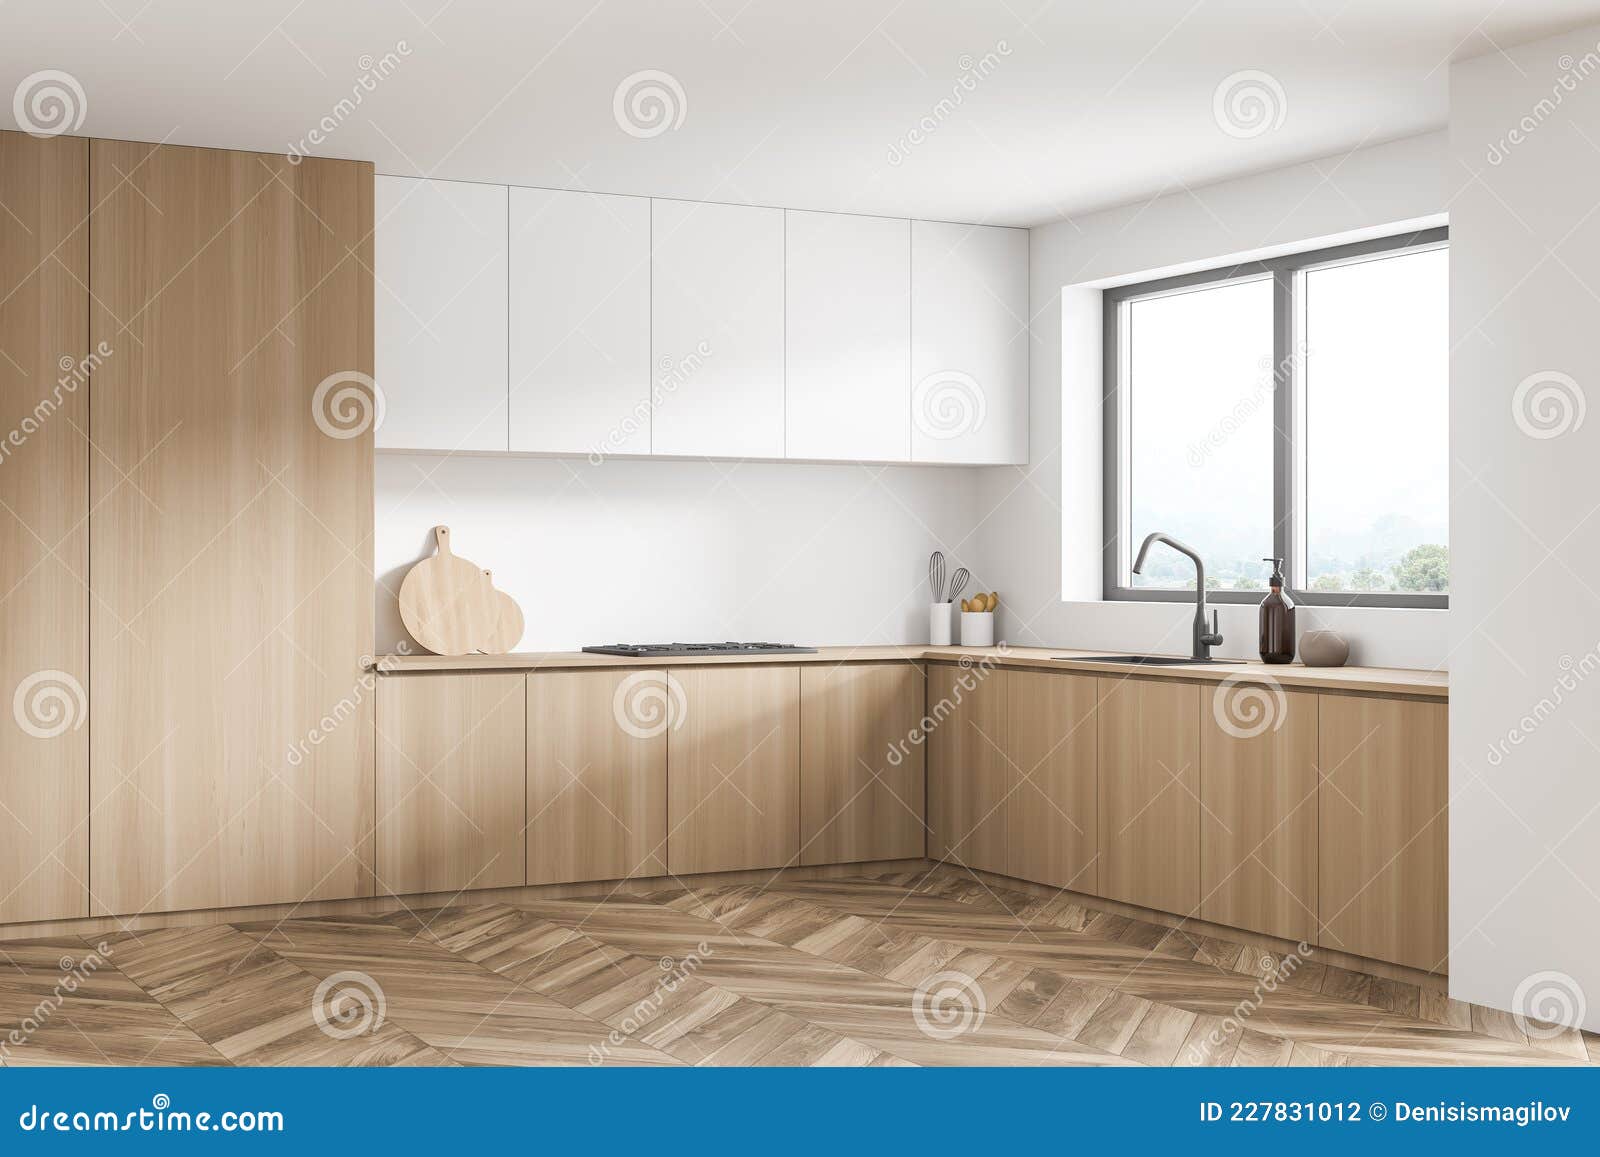 Parte del interior de una cocina moderna blanca con armarios con vidrio  esmerilado, una pared de ladrillo blanco y una encimera de madera. equipo  de cocina.